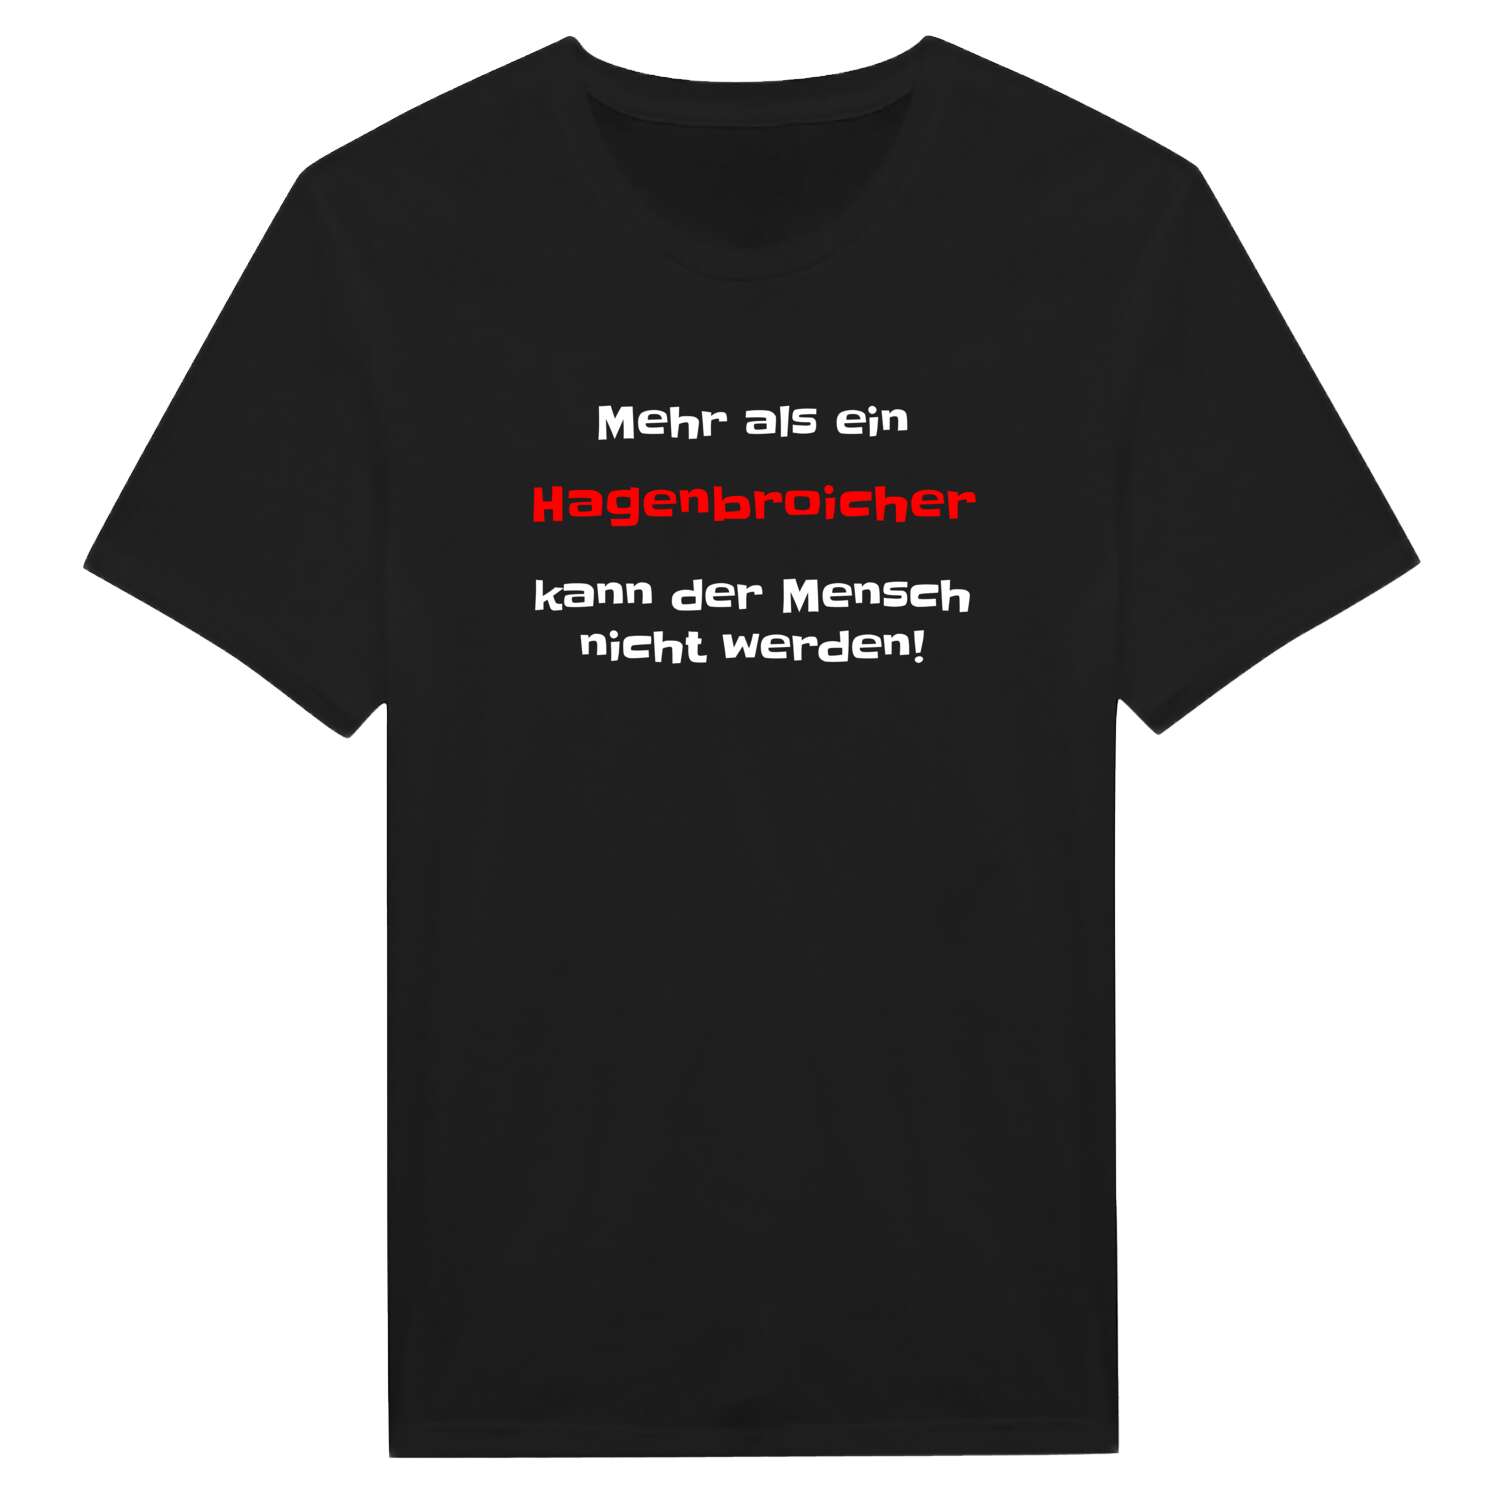 Hagenbroich T-Shirt »Mehr als ein«